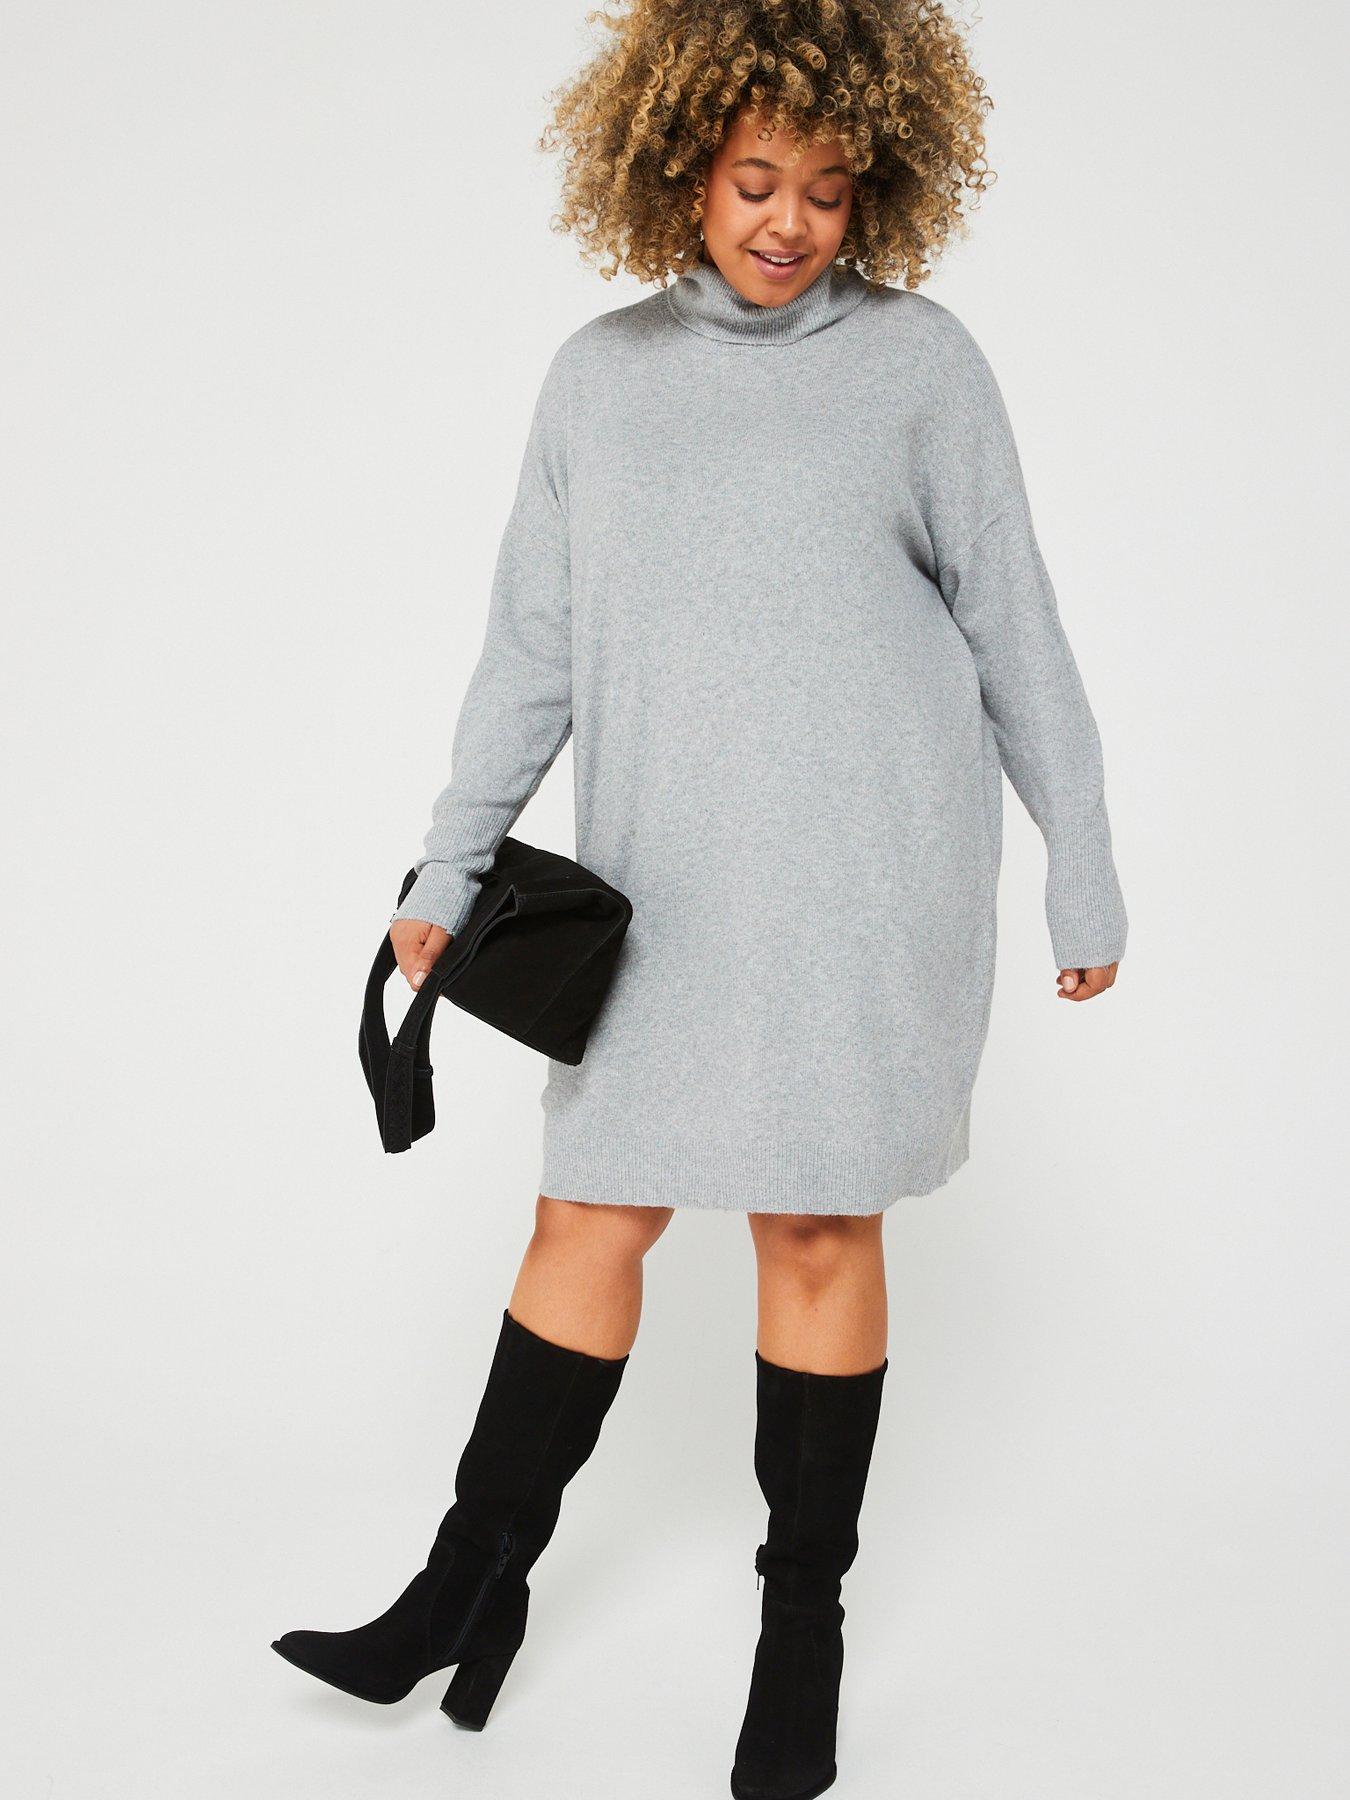 Grey High Neck Knitted Jumper Dress – AX Paris